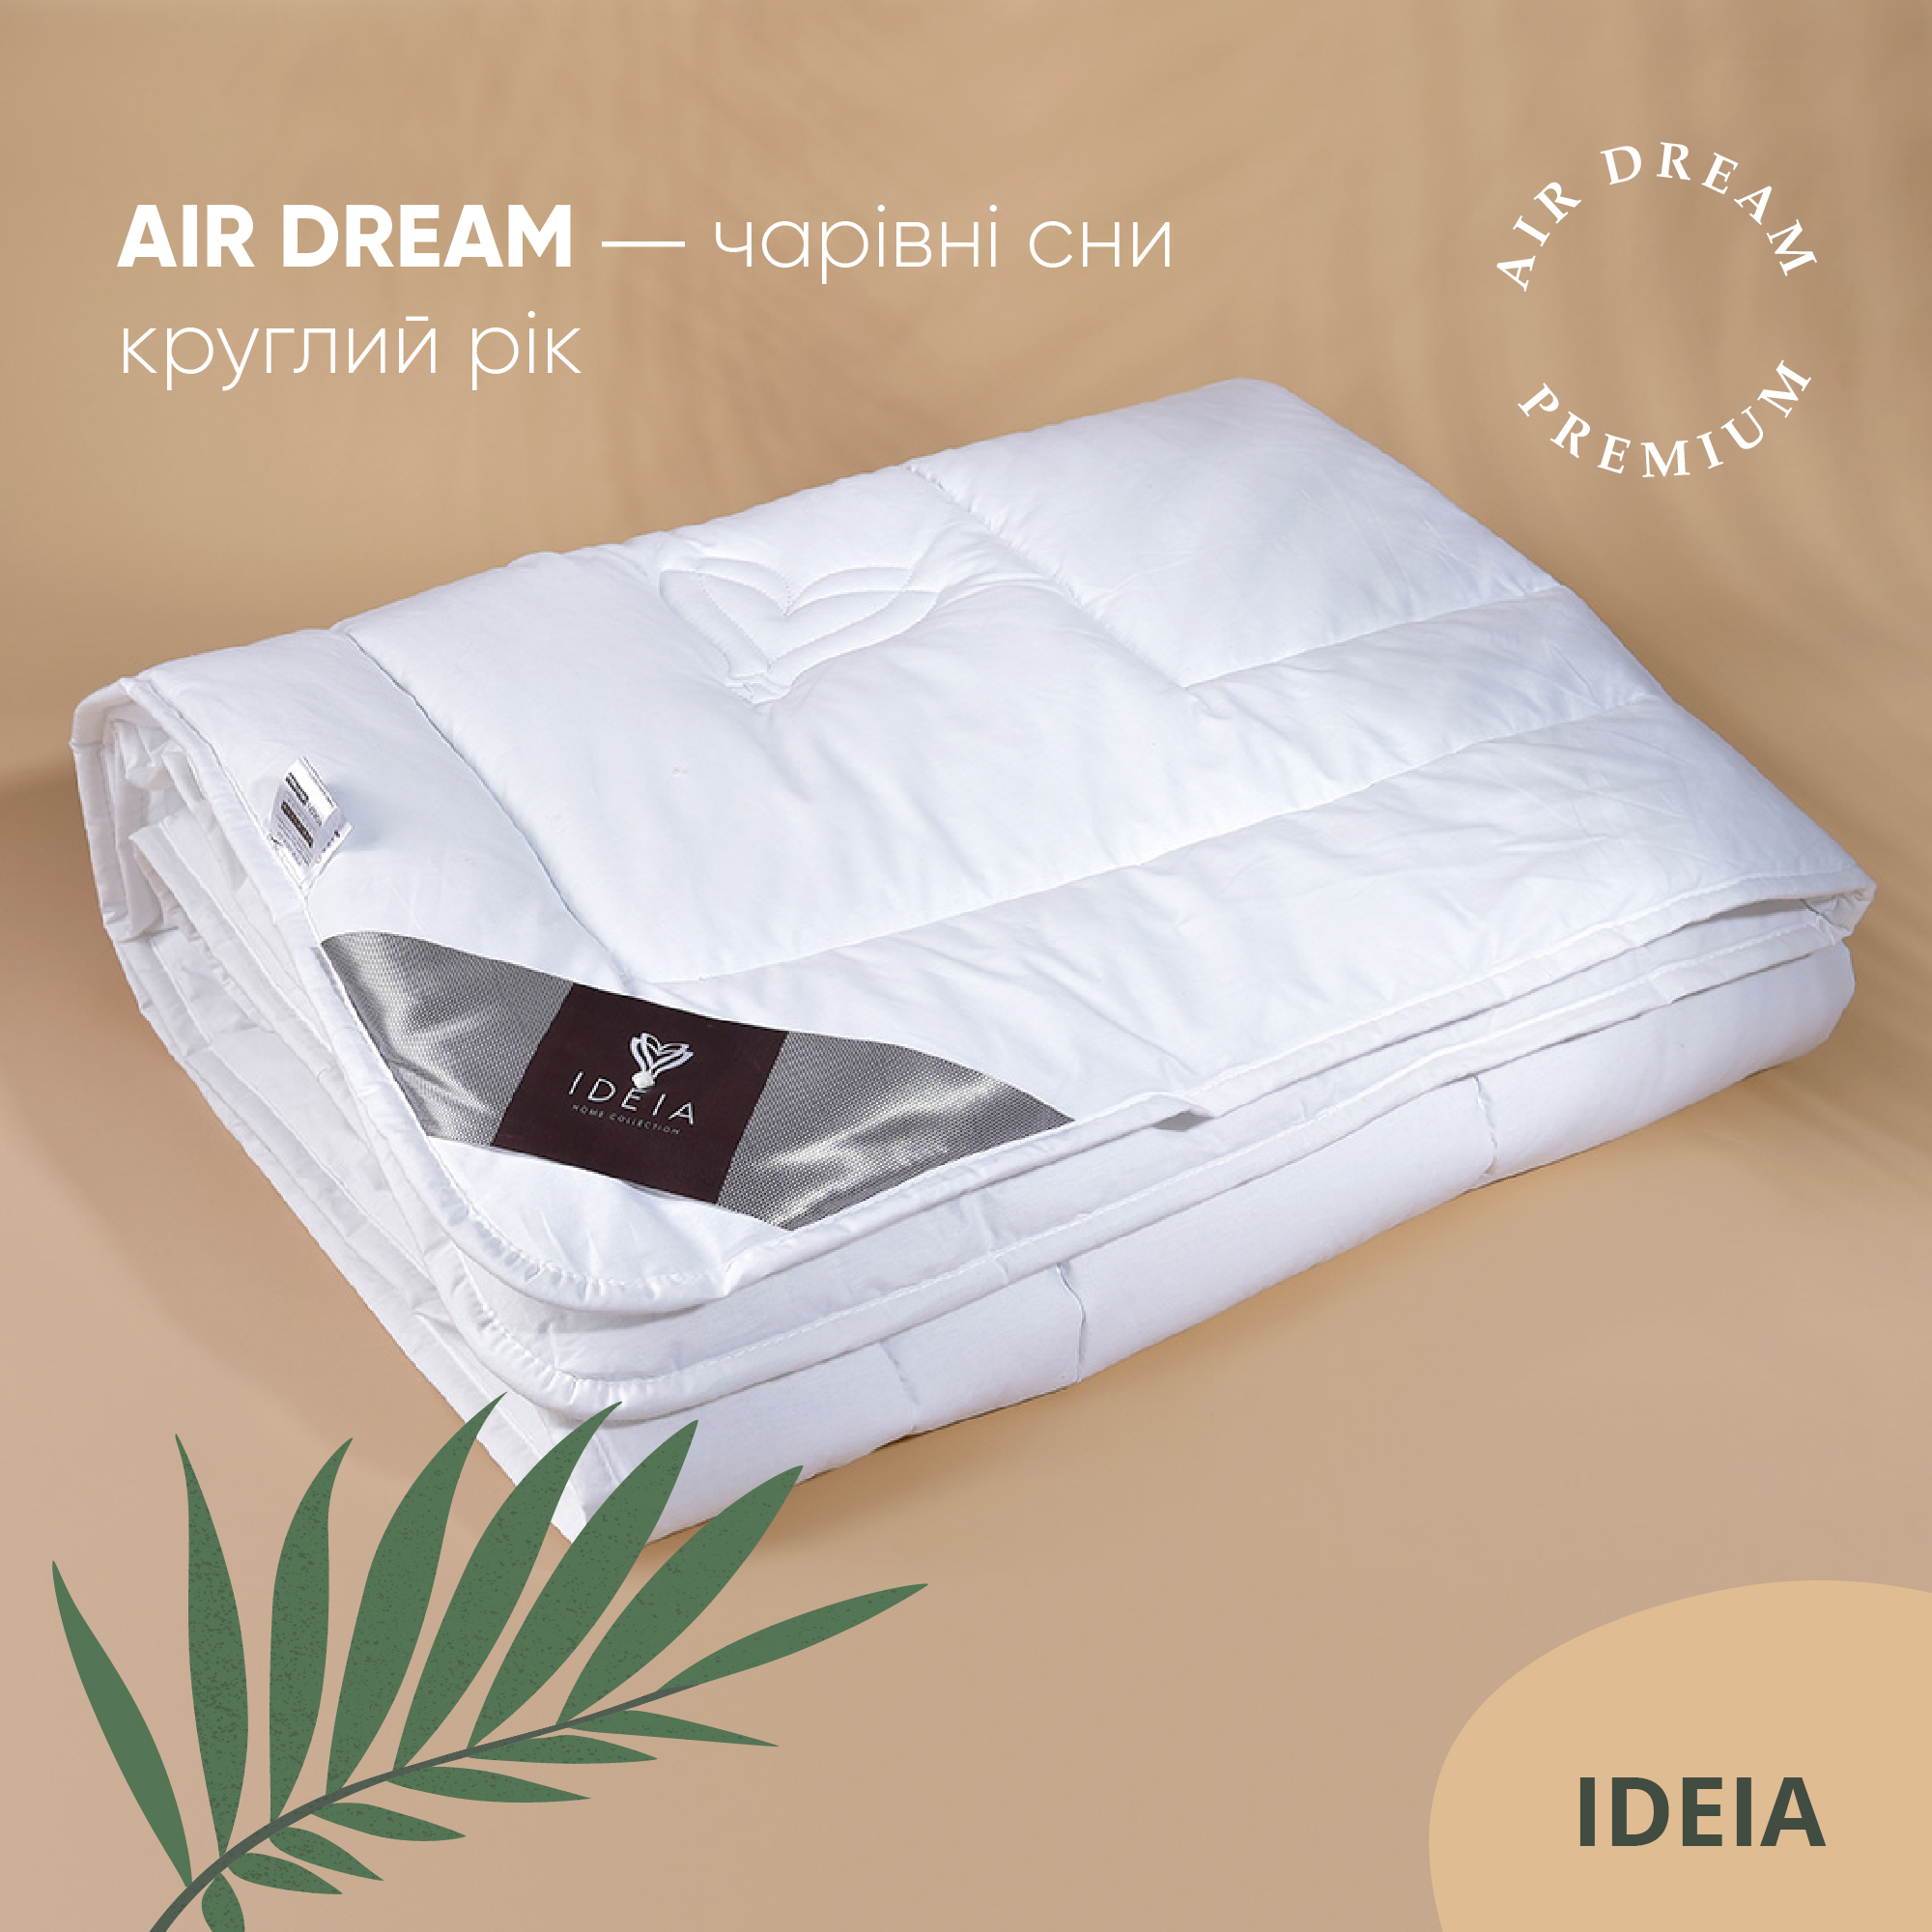 Одеяло Ideia Air Dream Premium зимнее, 220х200, белый (8-11699) - фото 5